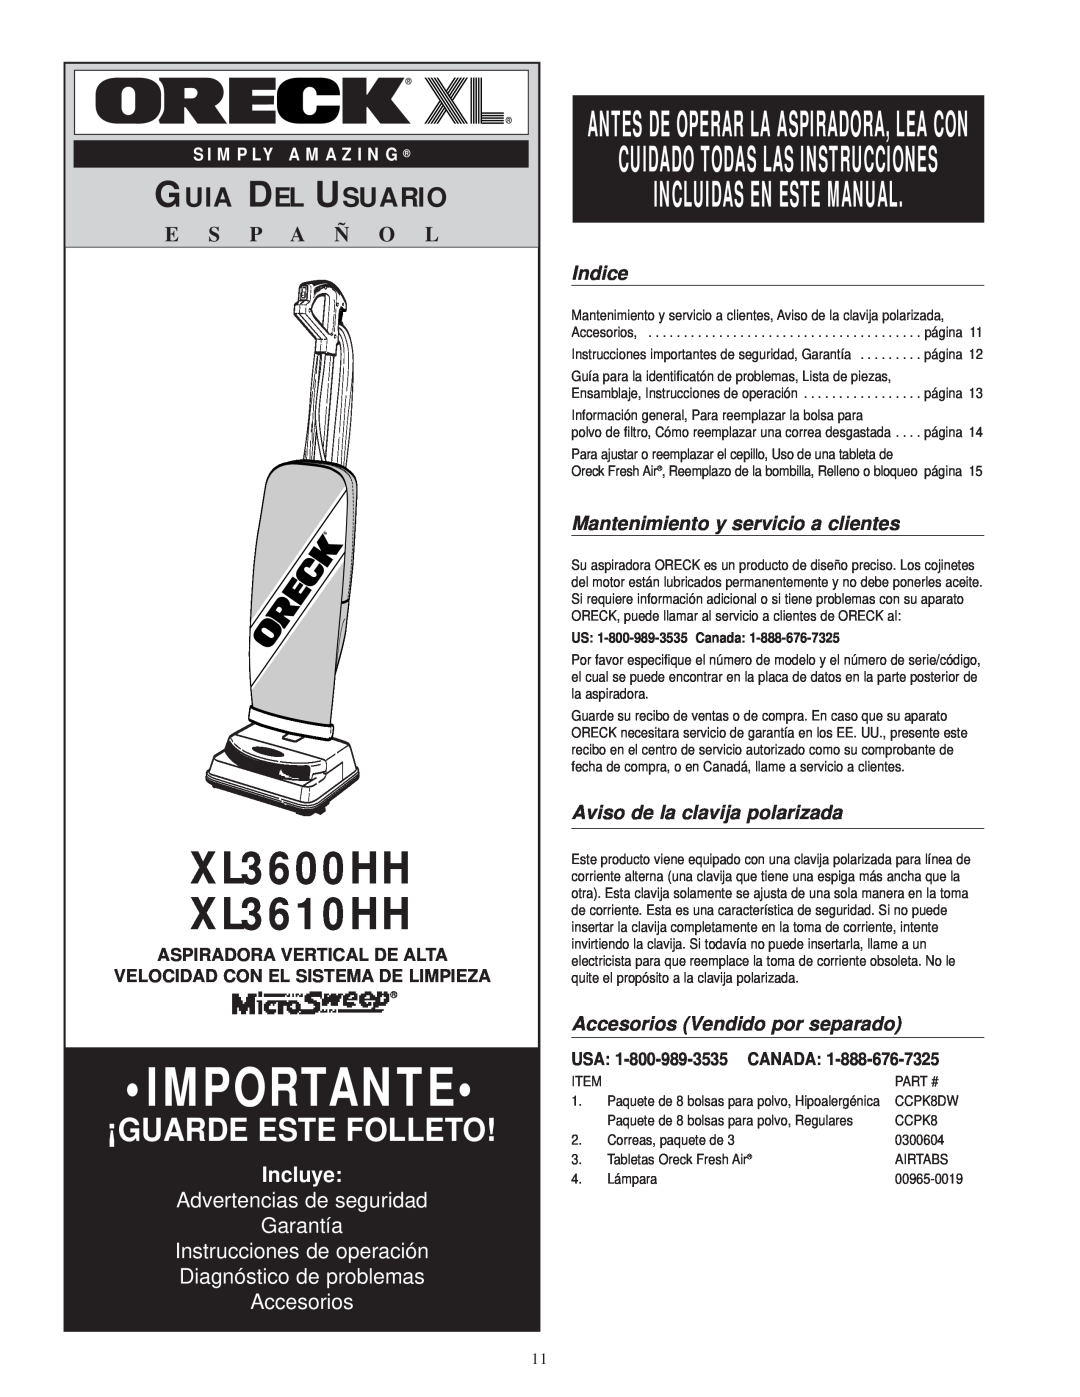 Oreck XL3610HH Incluidas En Este Manual, Guia Del Usuario, E S P A Ñ O L, Incluye, Advertencias de seguridad Garantía 